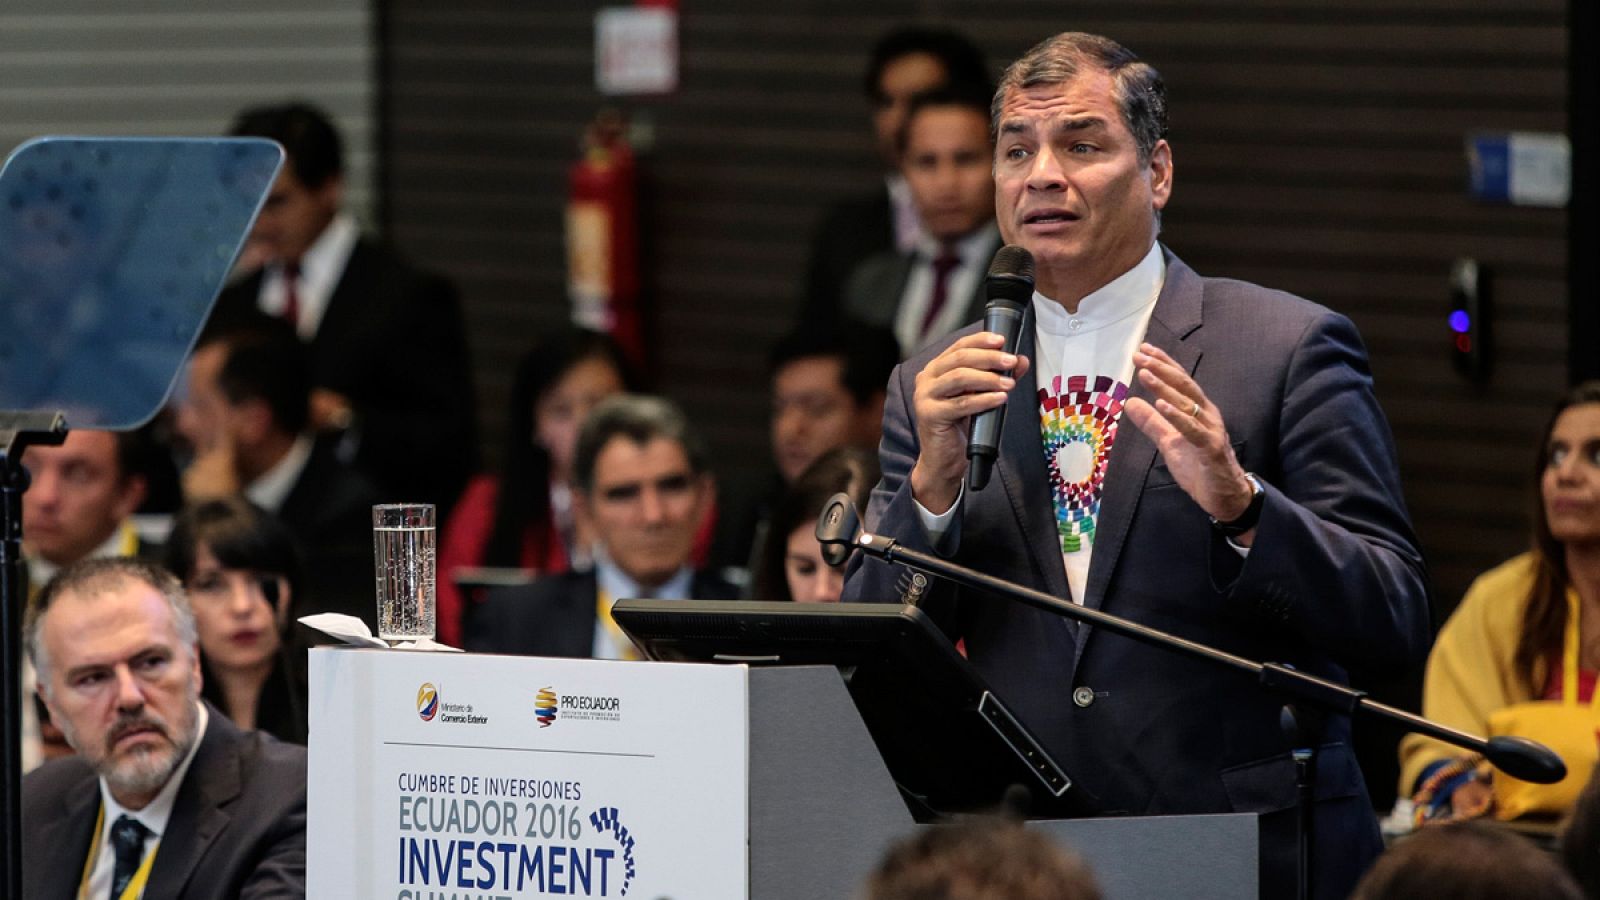 Una imagen del 25 de octubre de 2016 del presidente de Ecuador, Rafael Correa, en la Cumbre de inversiones Ecuador 2016